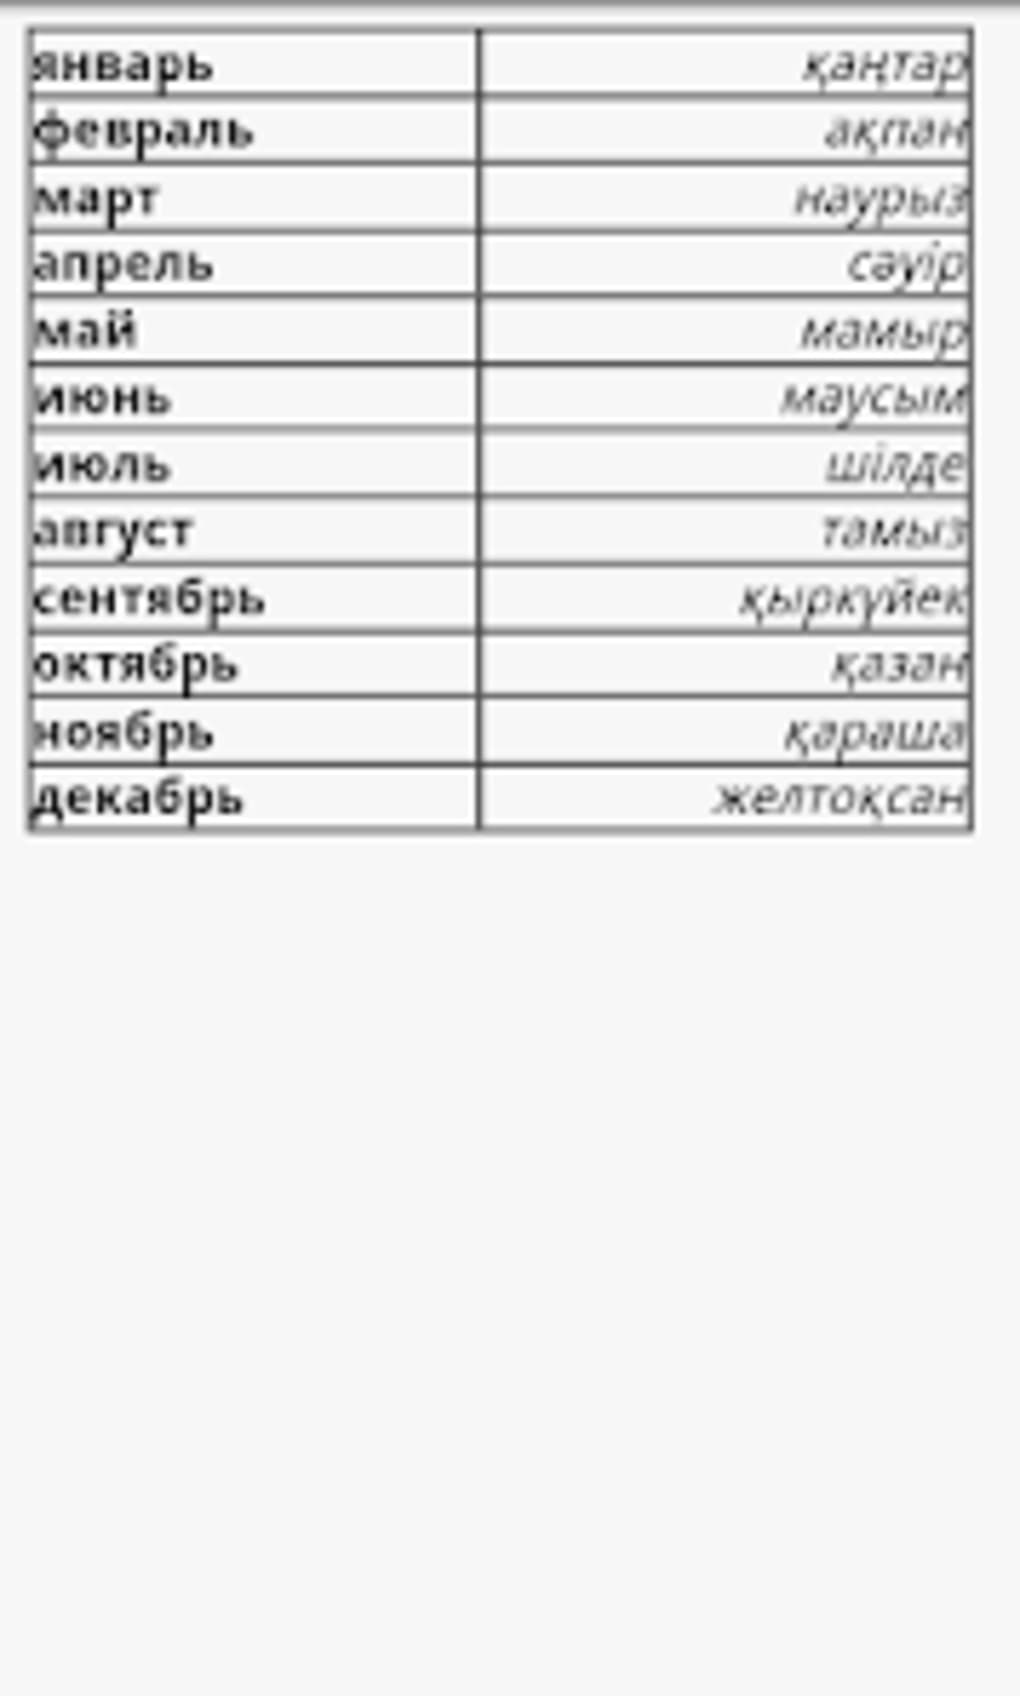 члены перевод на казахский язык фото 9